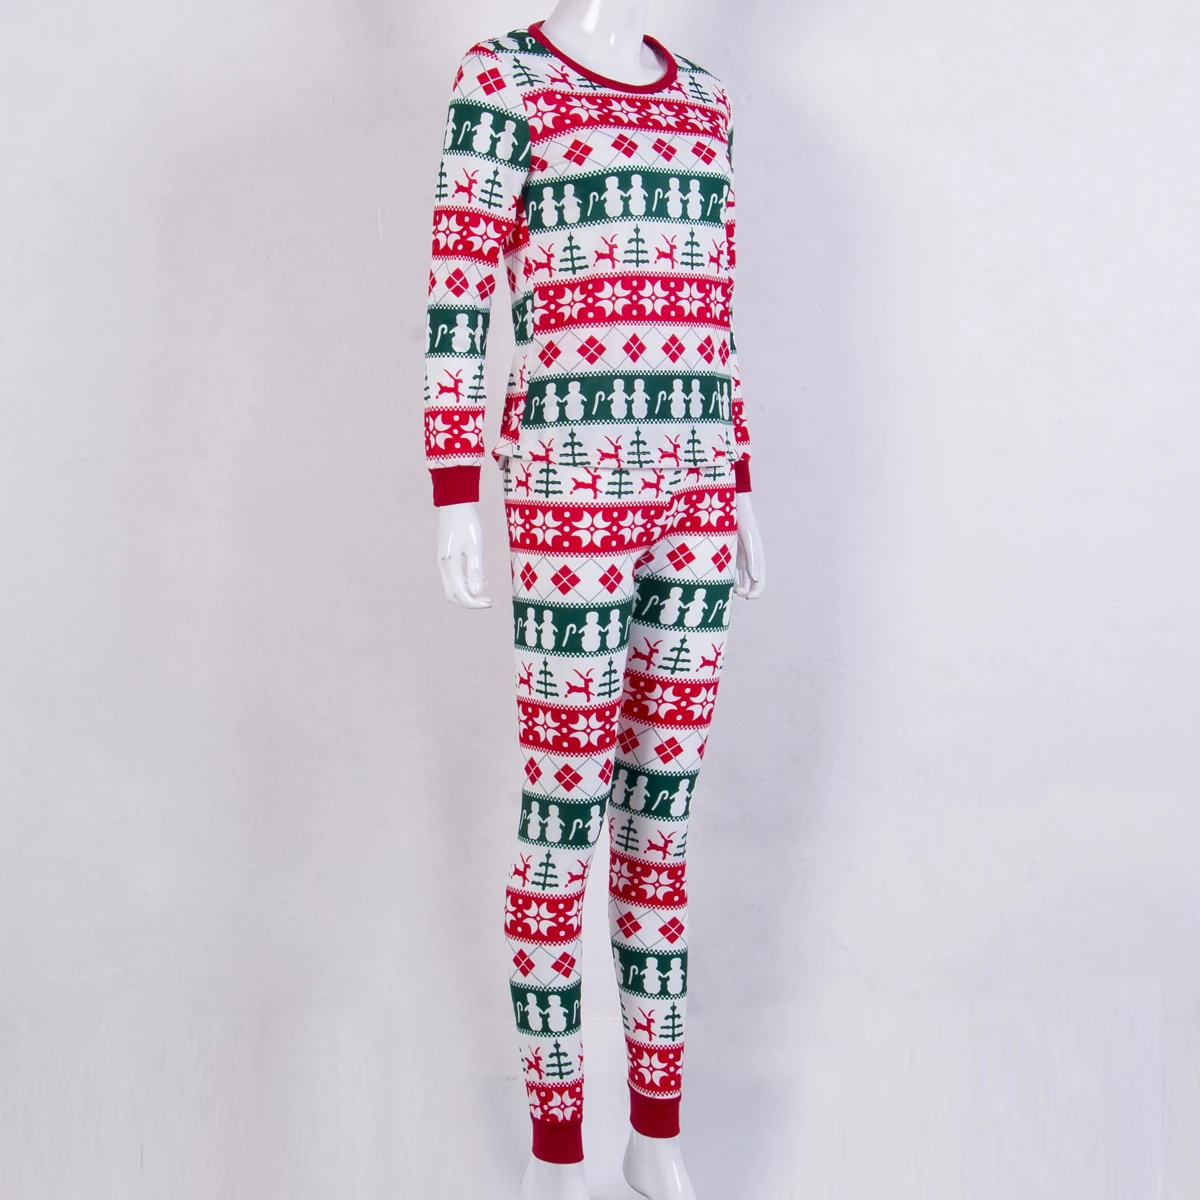 Beand/Новые одинаковые комплекты для семьи Рождественский пижамный комплект, детская одежда для маленьких девочек, футболка+ штаны, комплект пижамы, подарки